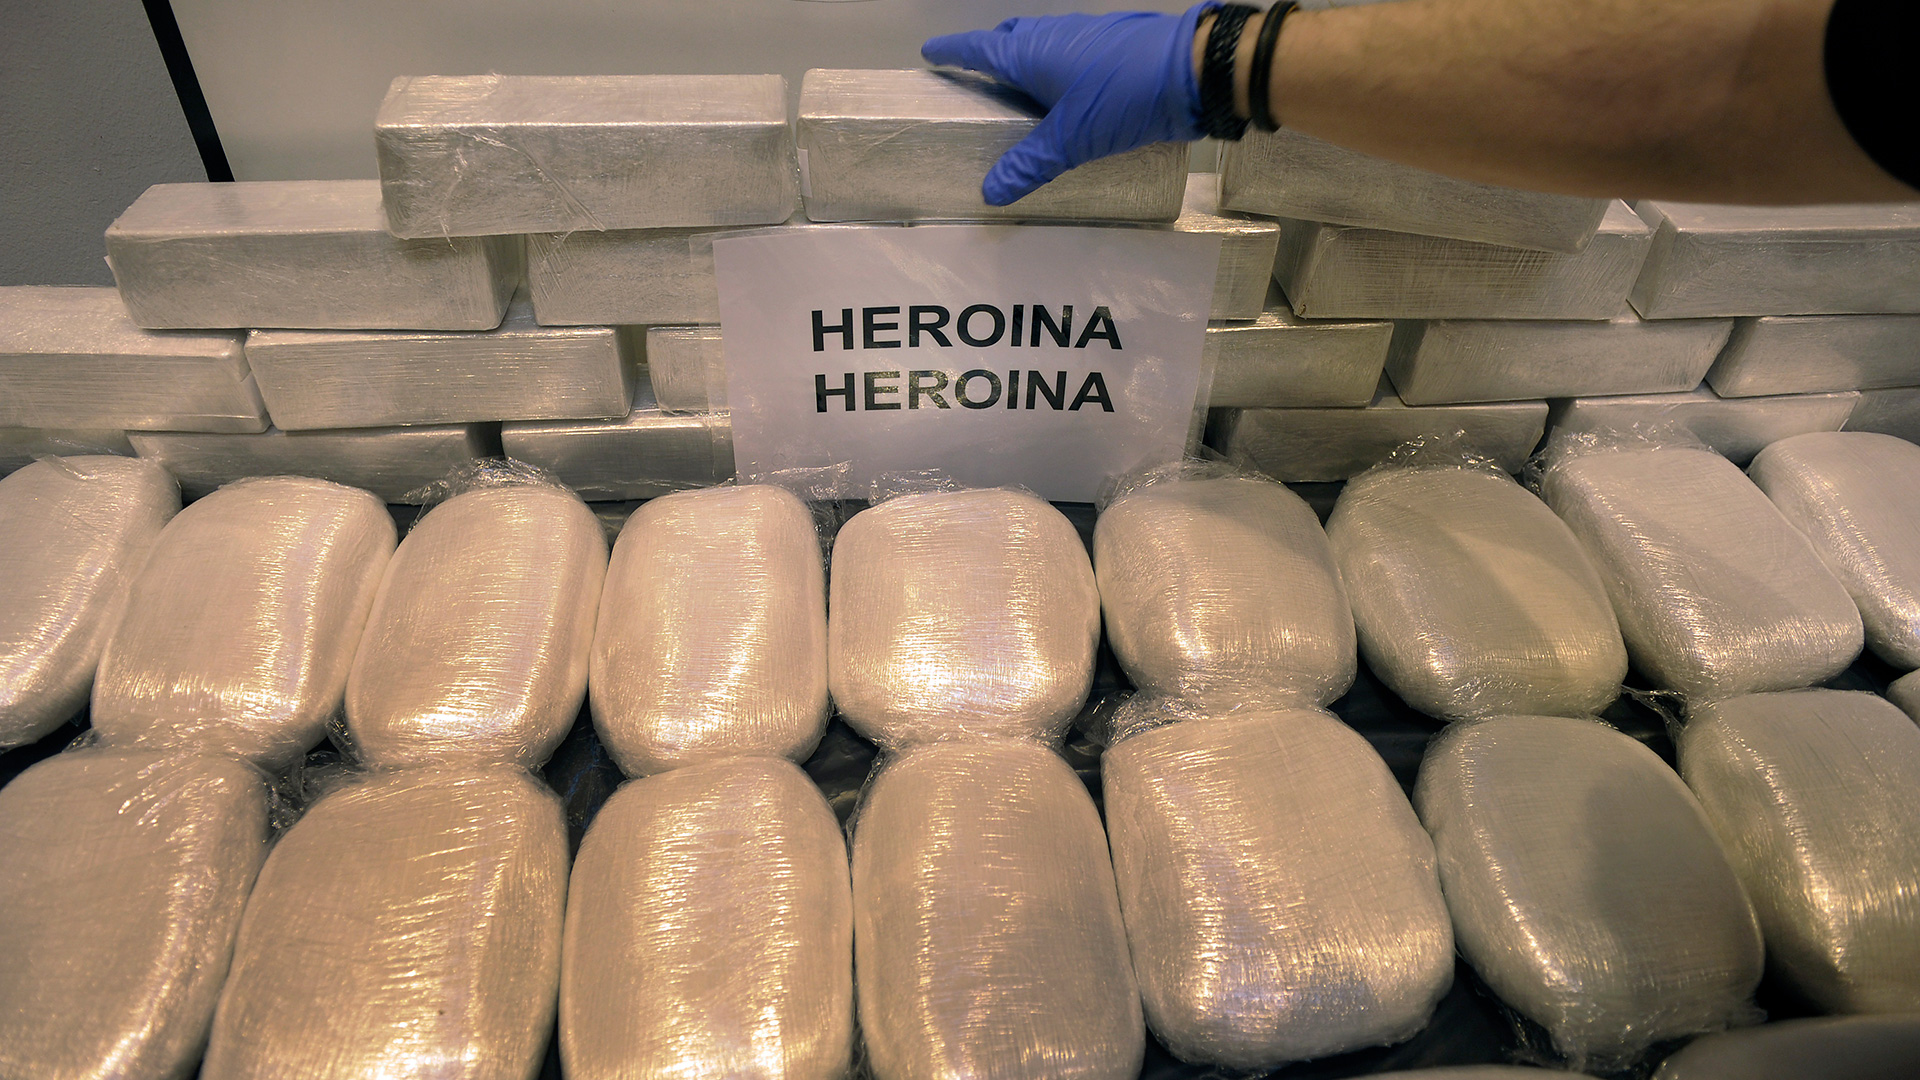 Incautada en España la mayor cantidad de heroína de los últimos años